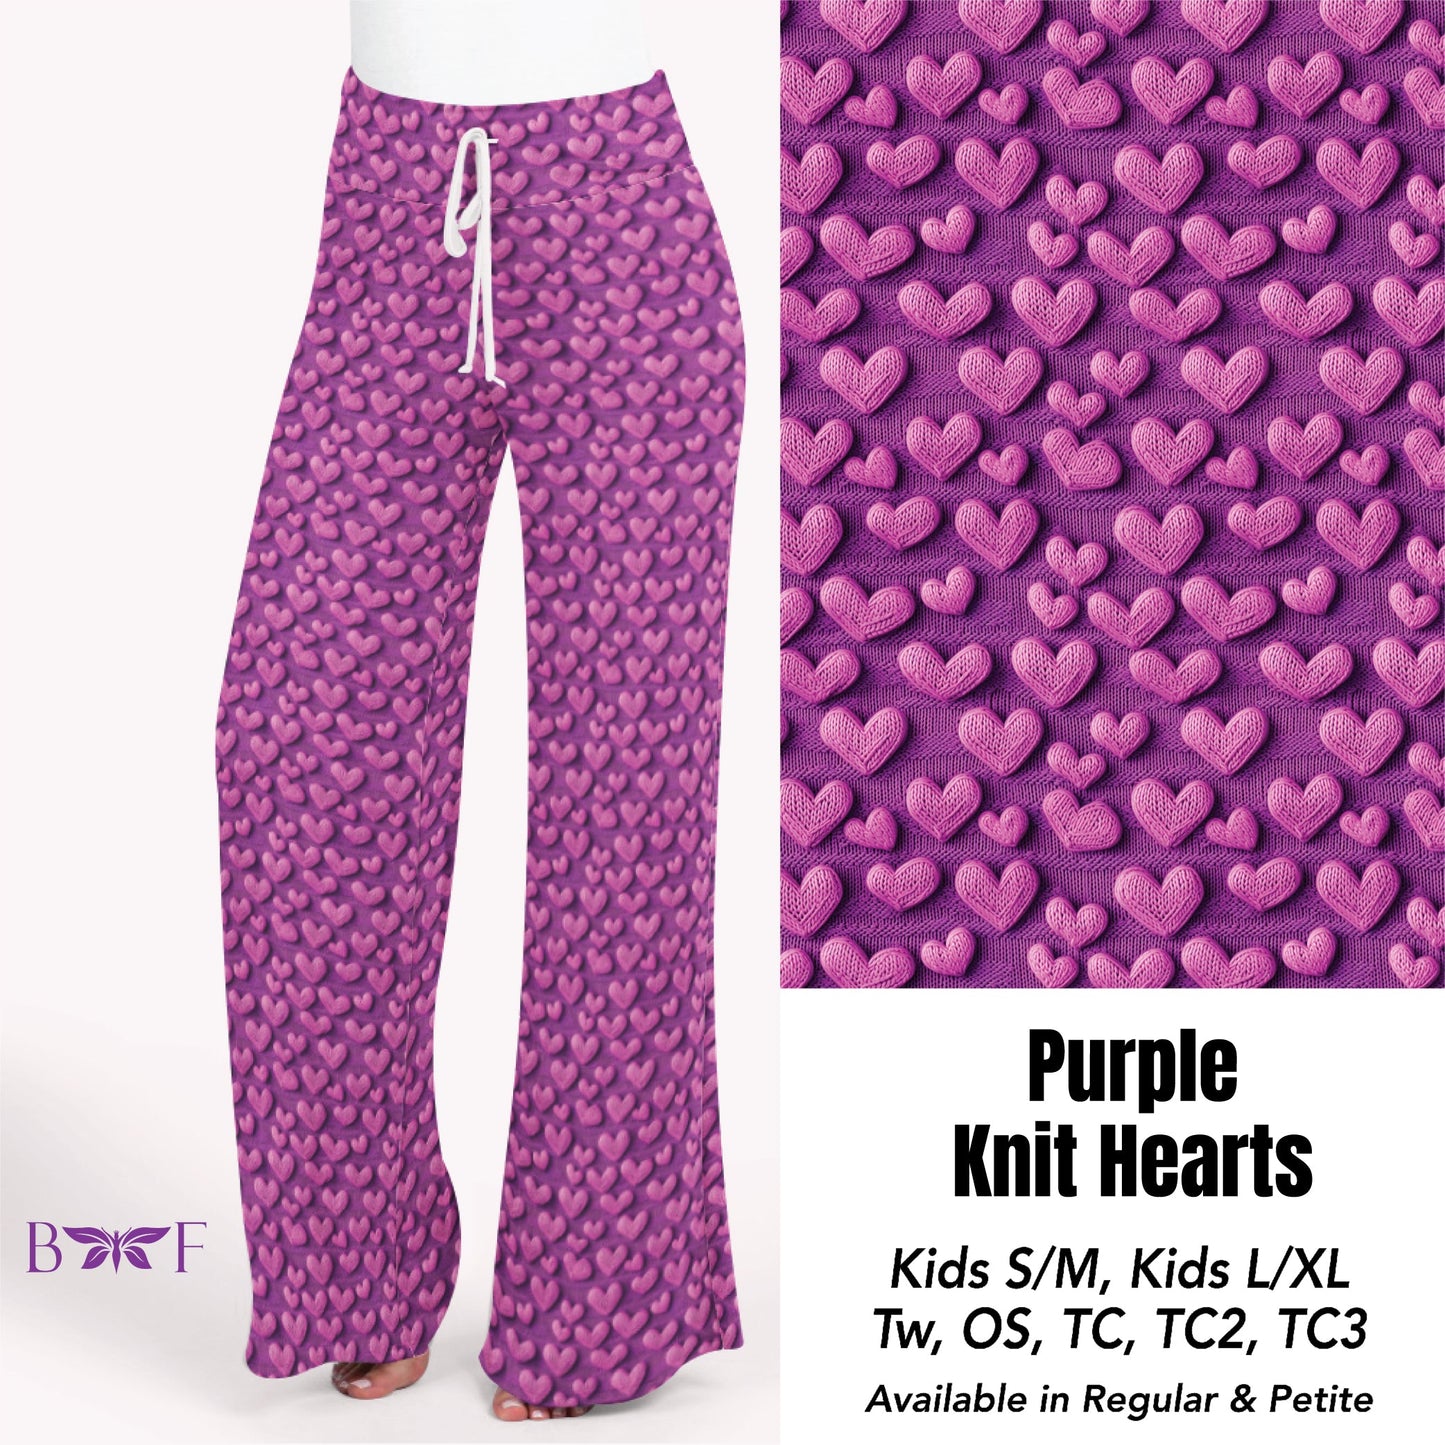 Purple Knit Hearts skorts